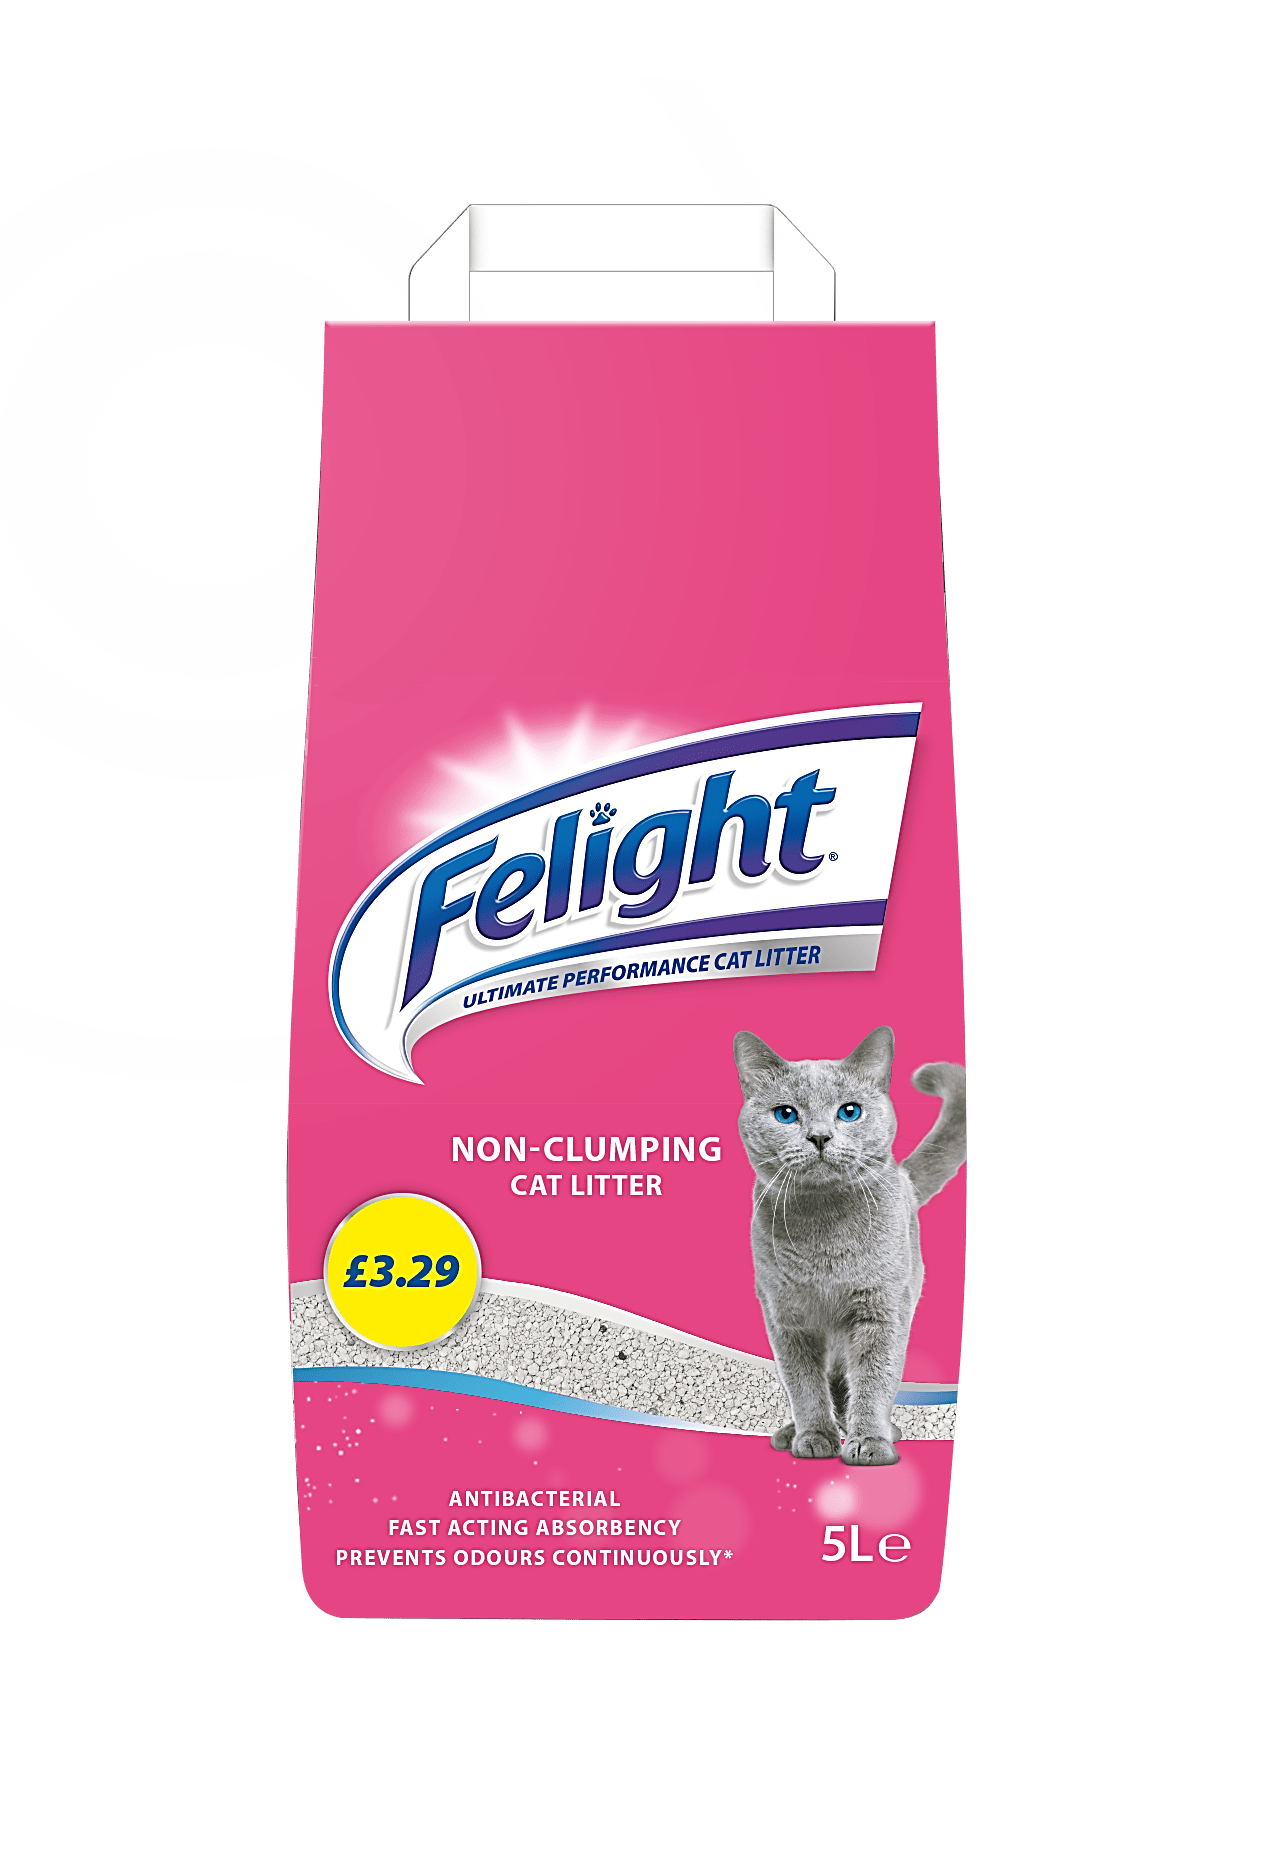 Felight Antibacterial NonClumping Cat Litter 5L Bob Martin